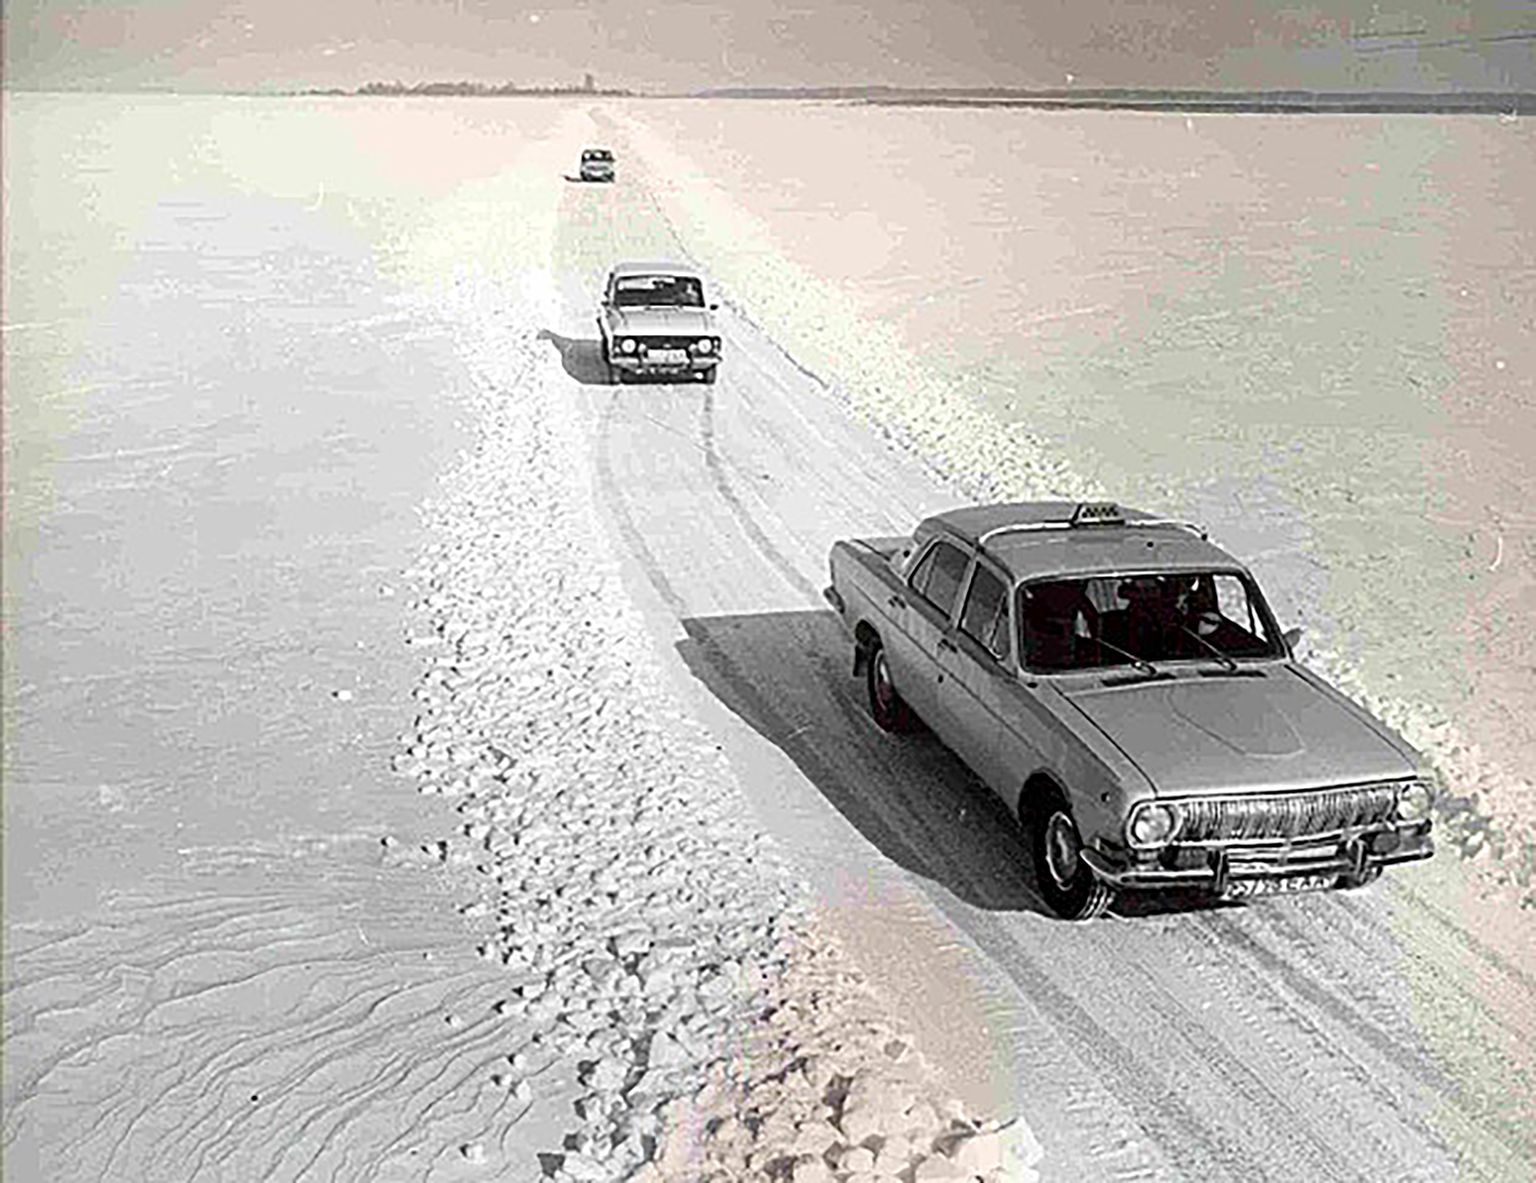 Suure väina jäätee 1980ndatel.